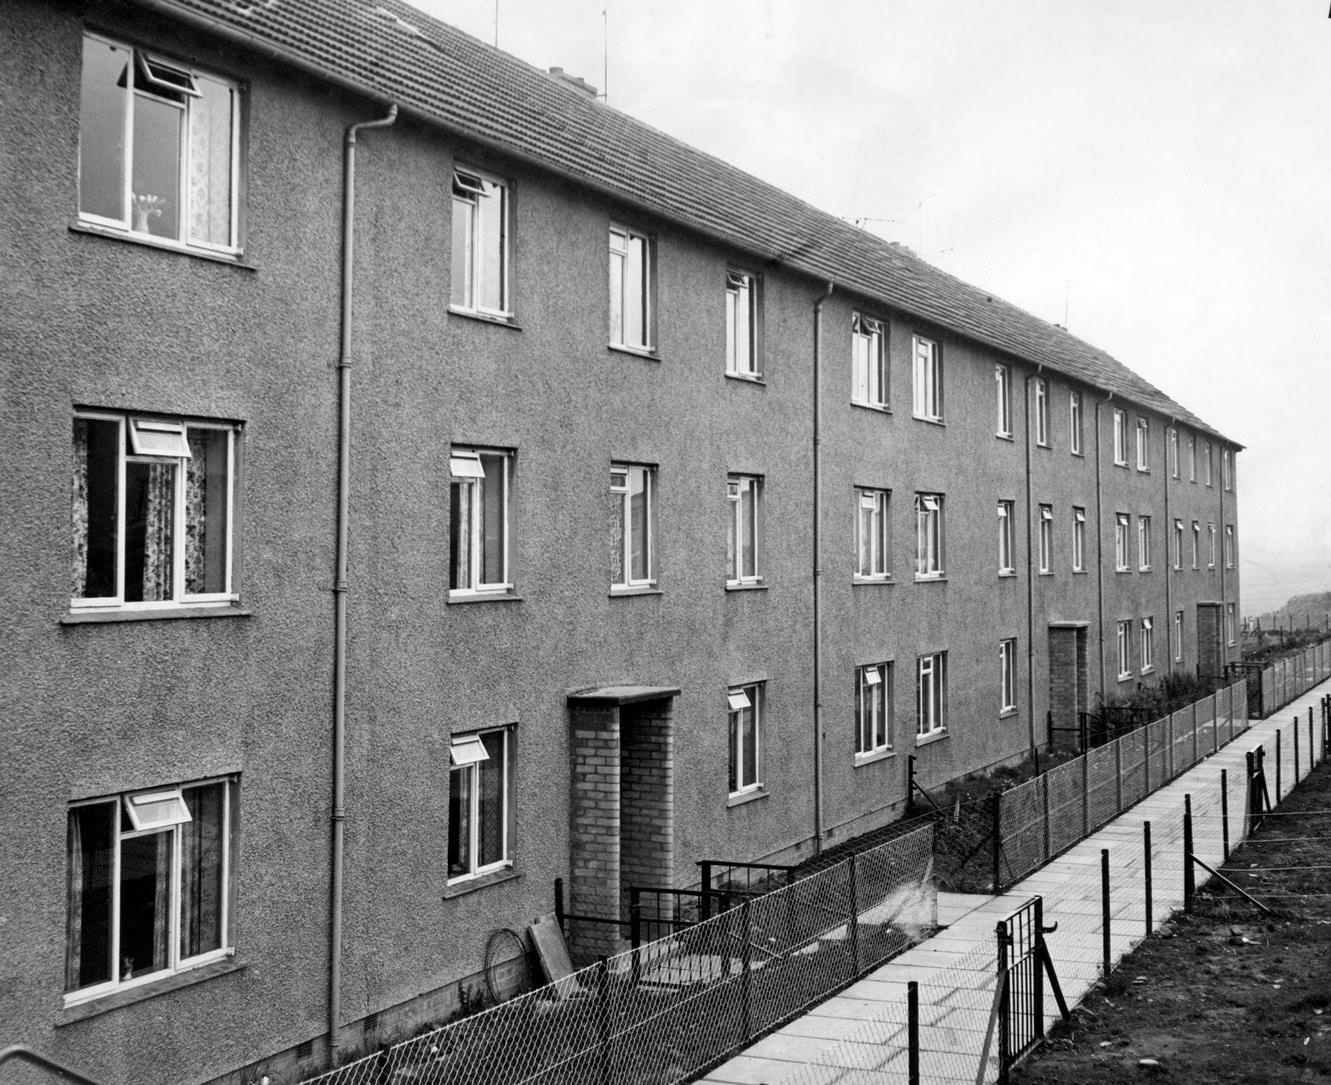 Dundee Nostalgia, 1960s